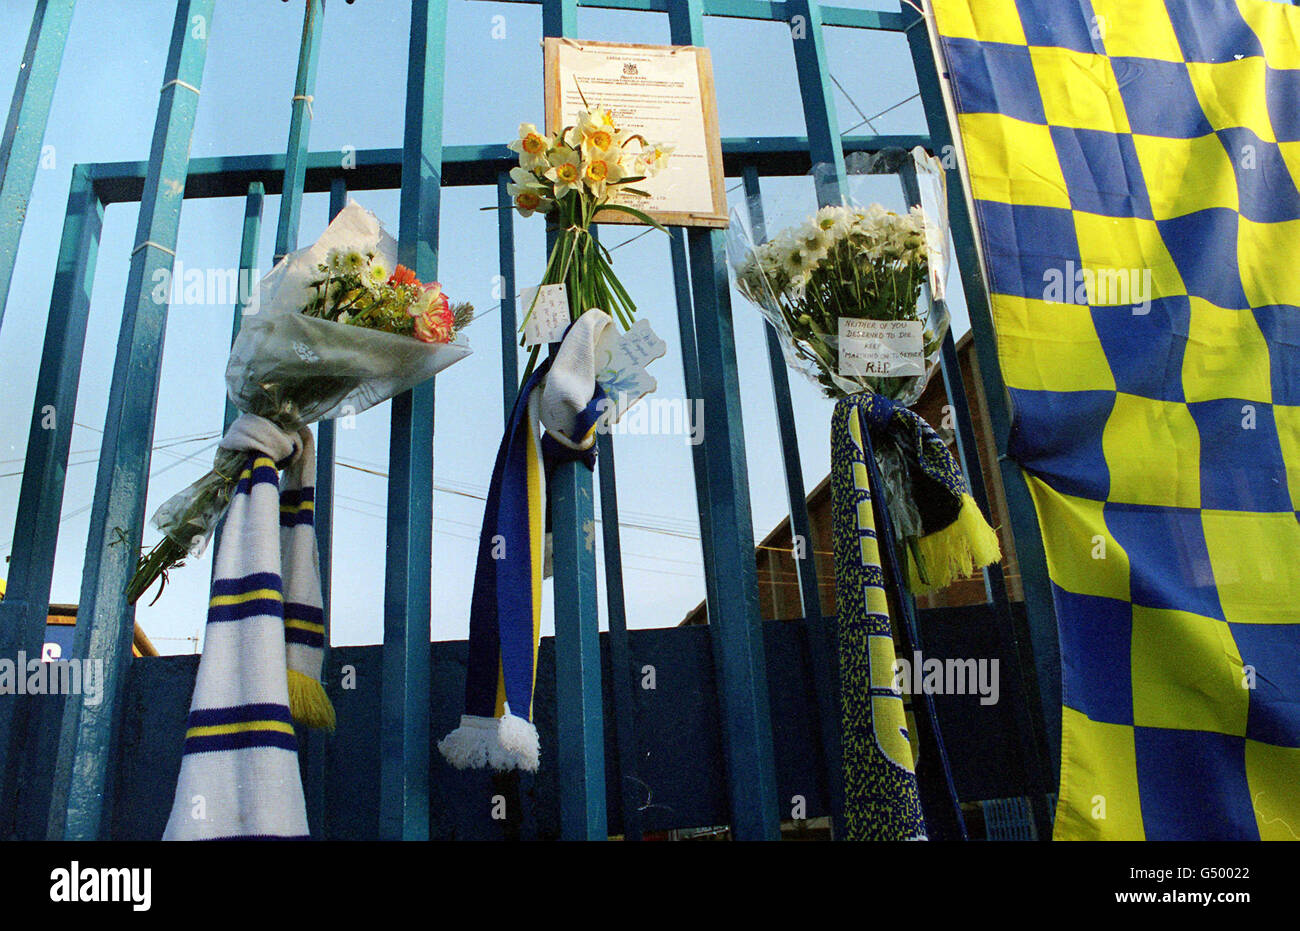 Einige der floralen Tribute, die vor den Toren des Elland Road Stadions, der Heimat des Leeds United Football Club, platziert wurden, nachdem zwei Leeds-Fans während eines Ausbruchs der Kämpfe in Istanbul, Türkei, getötet wurden. Stockfoto